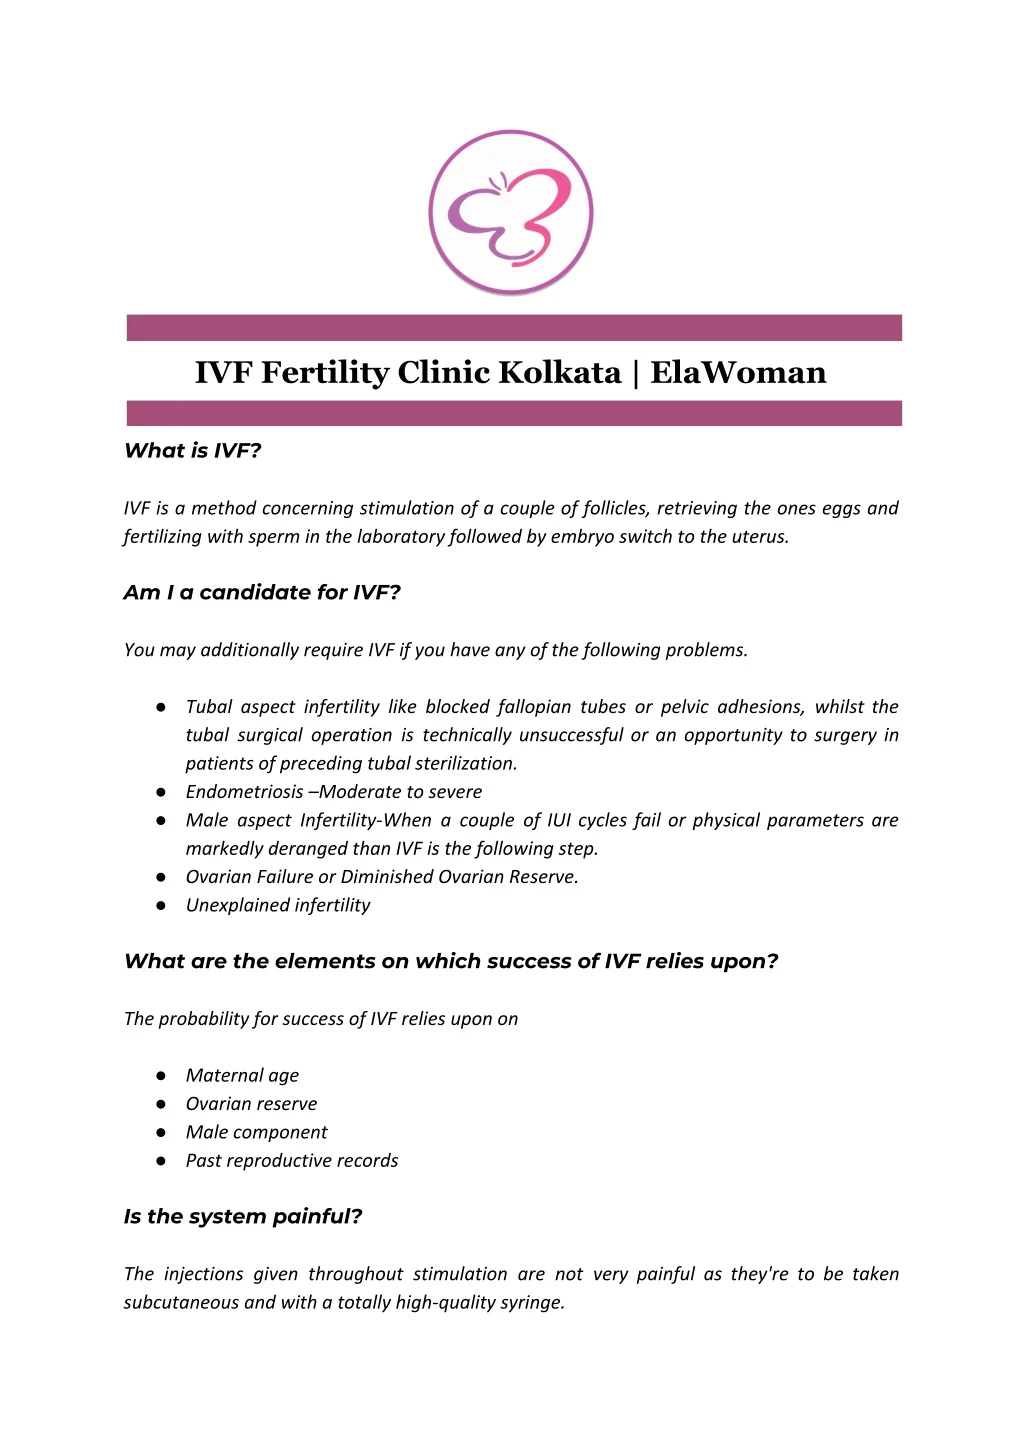 ivf fertility clinic kolkata elawoman